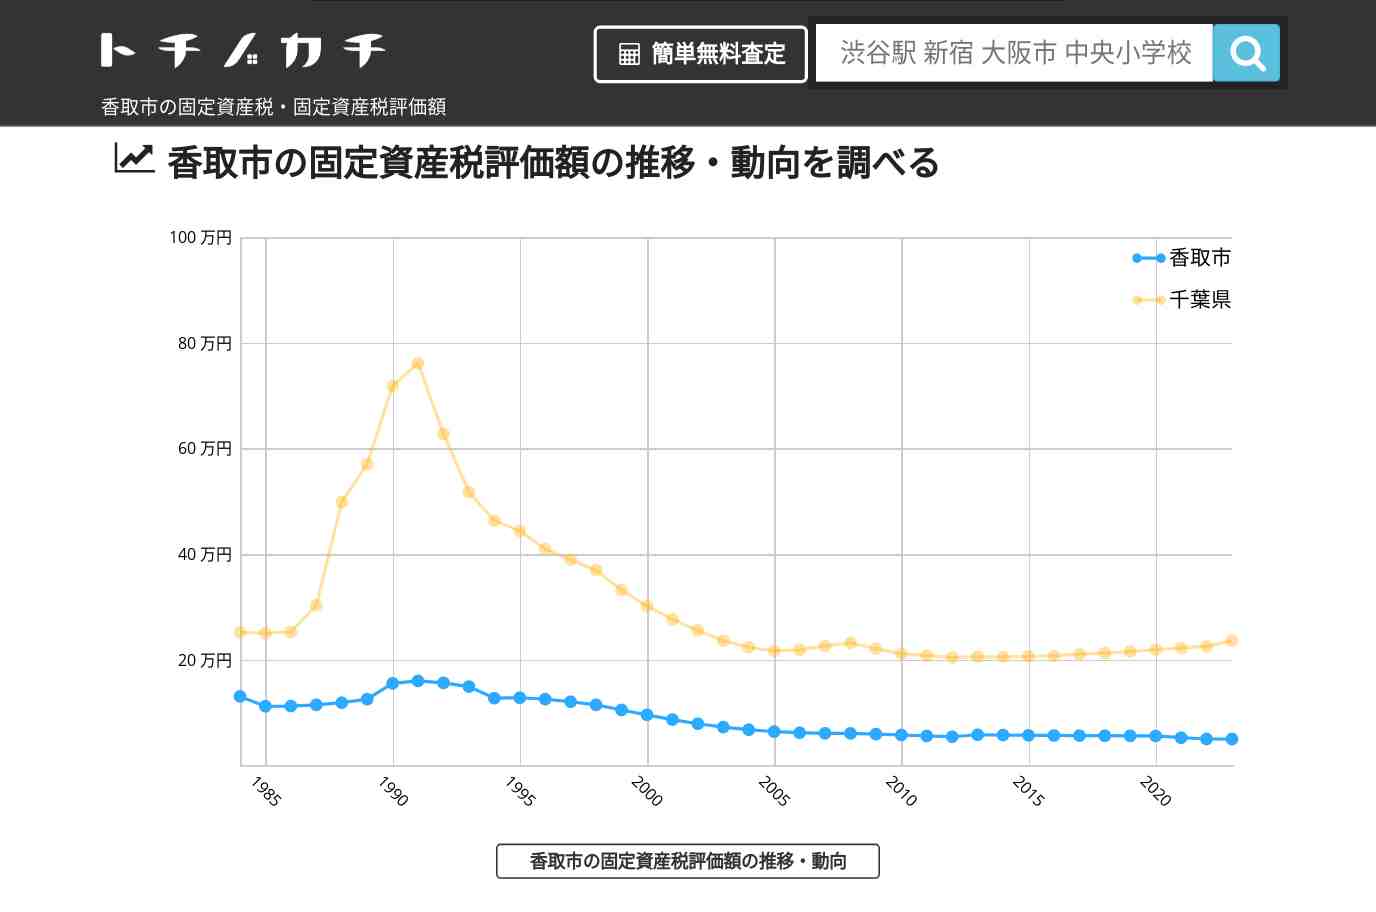 八都小学校(千葉県 香取市)周辺の固定資産税・固定資産税評価額 | トチノカチ